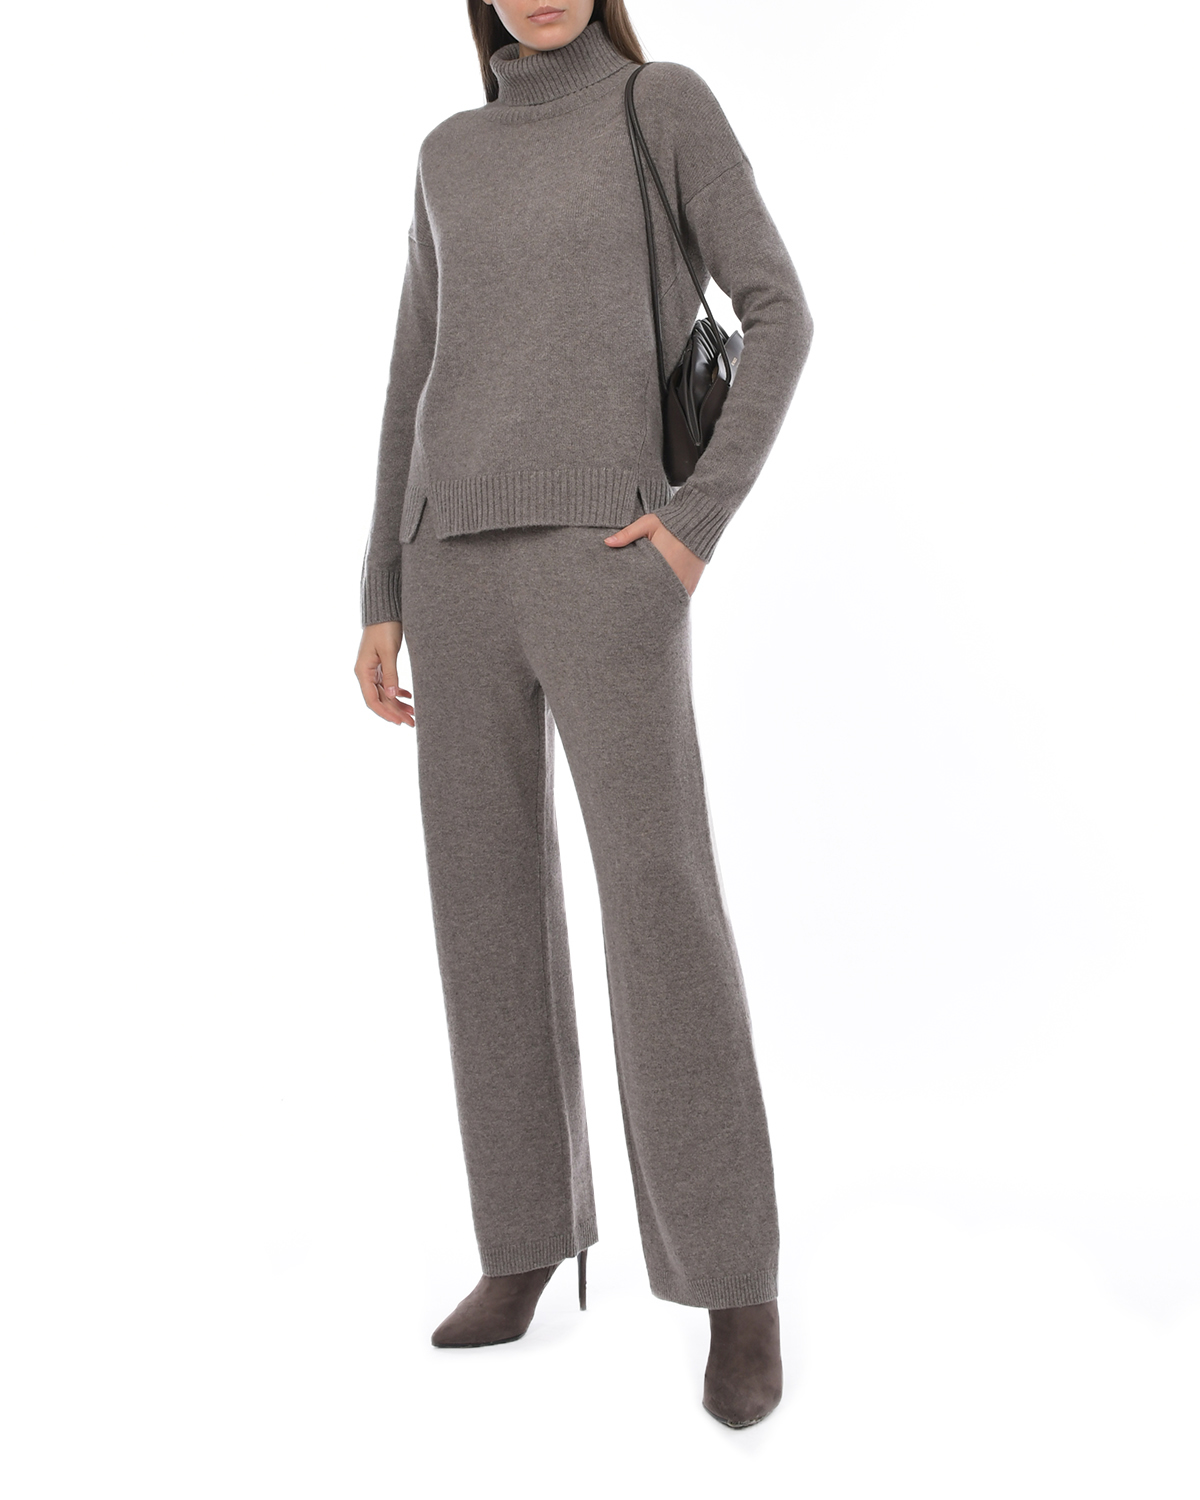 Прямые брюки кофейного цвета FTC Cashmere, размер 42 - фото 2